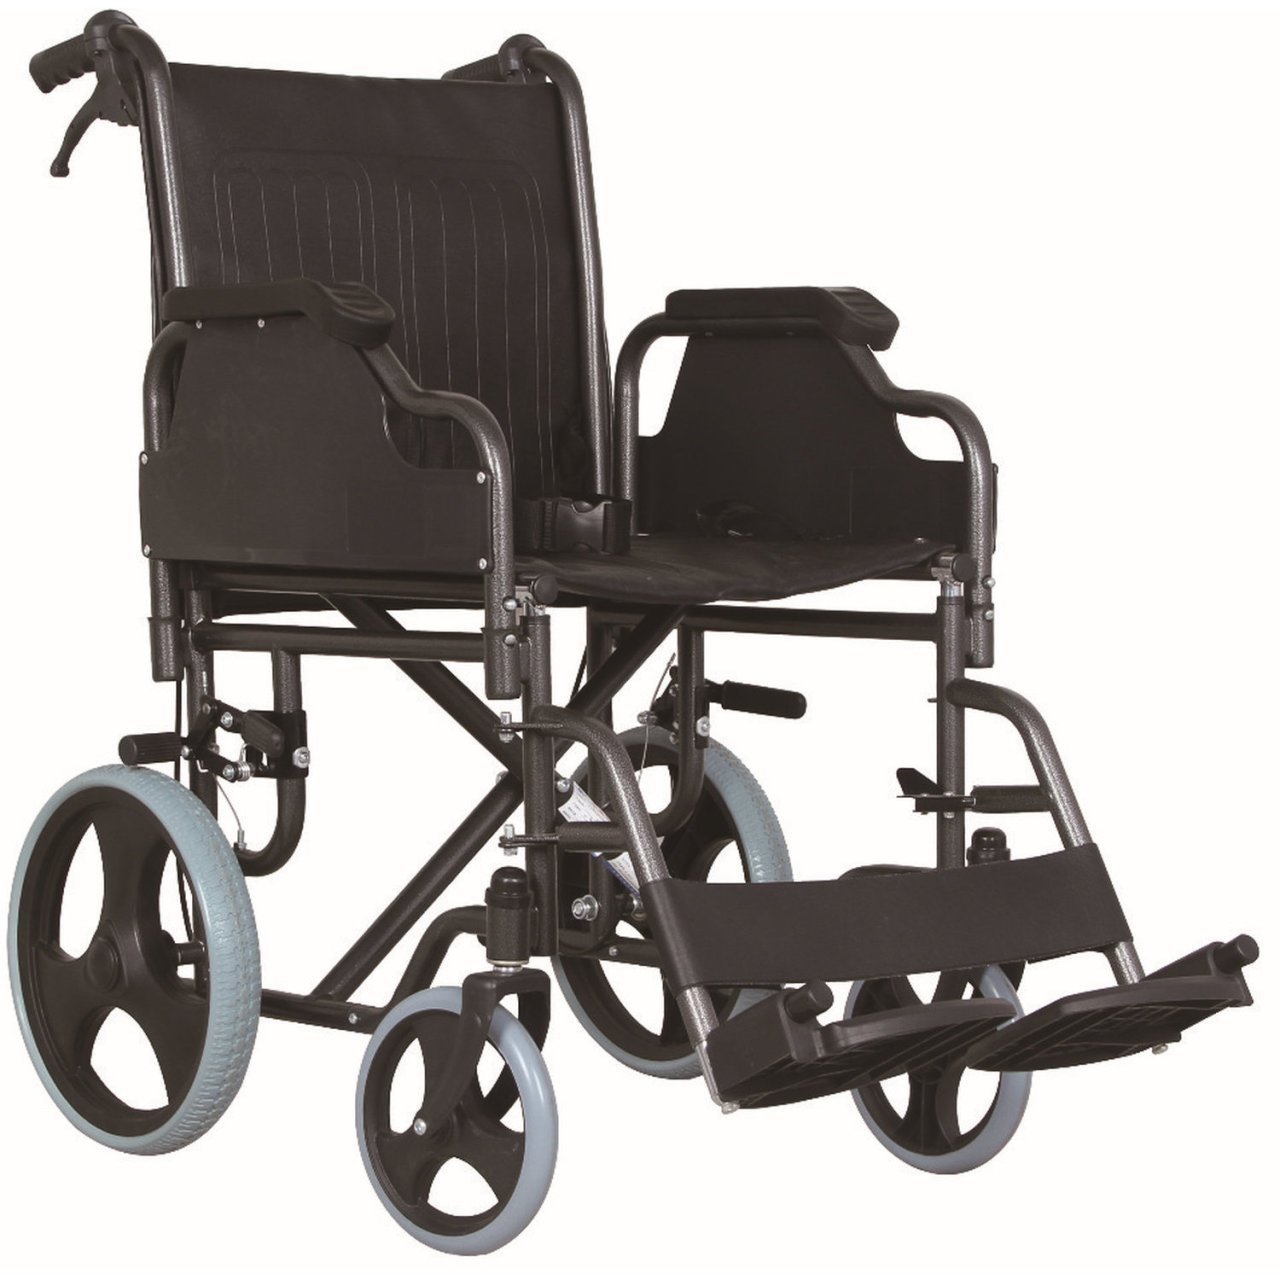 Comfort Plus KY904-BJ Özellikli Transfer Tekerlekli Sandalye